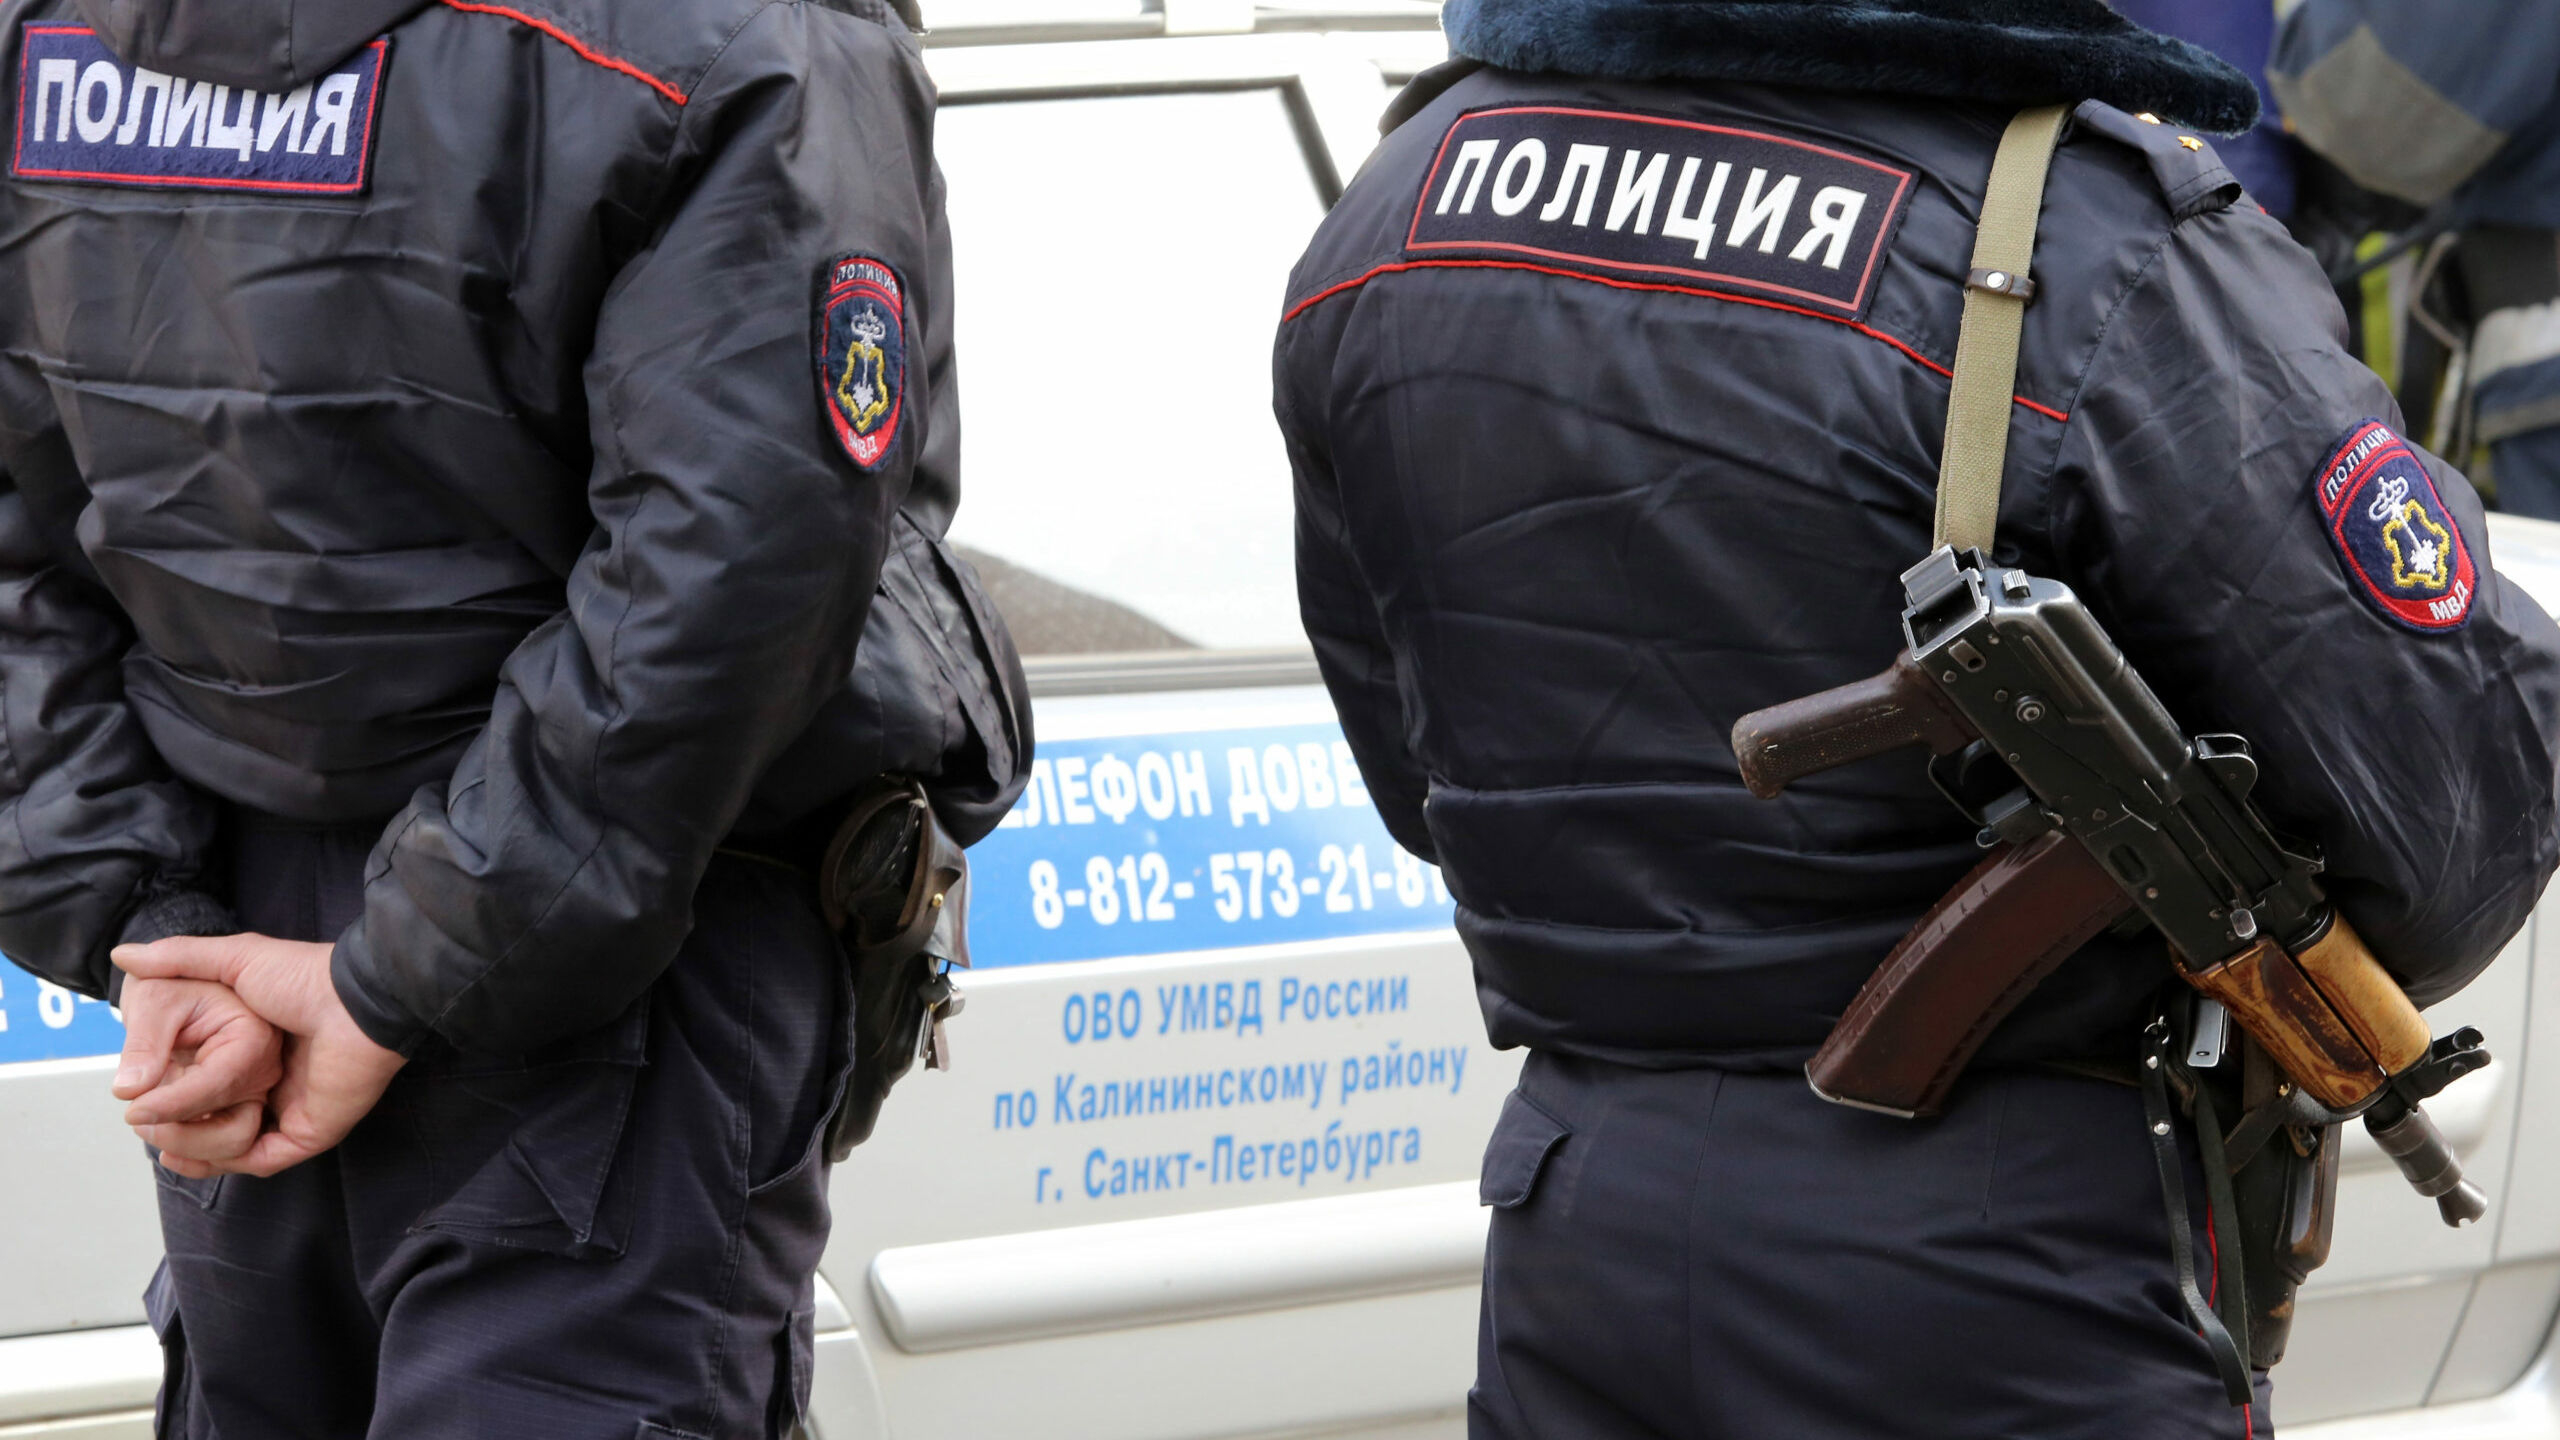 Стрелявший по женщине на Российском проспекте стал фигурантом уголовного дела